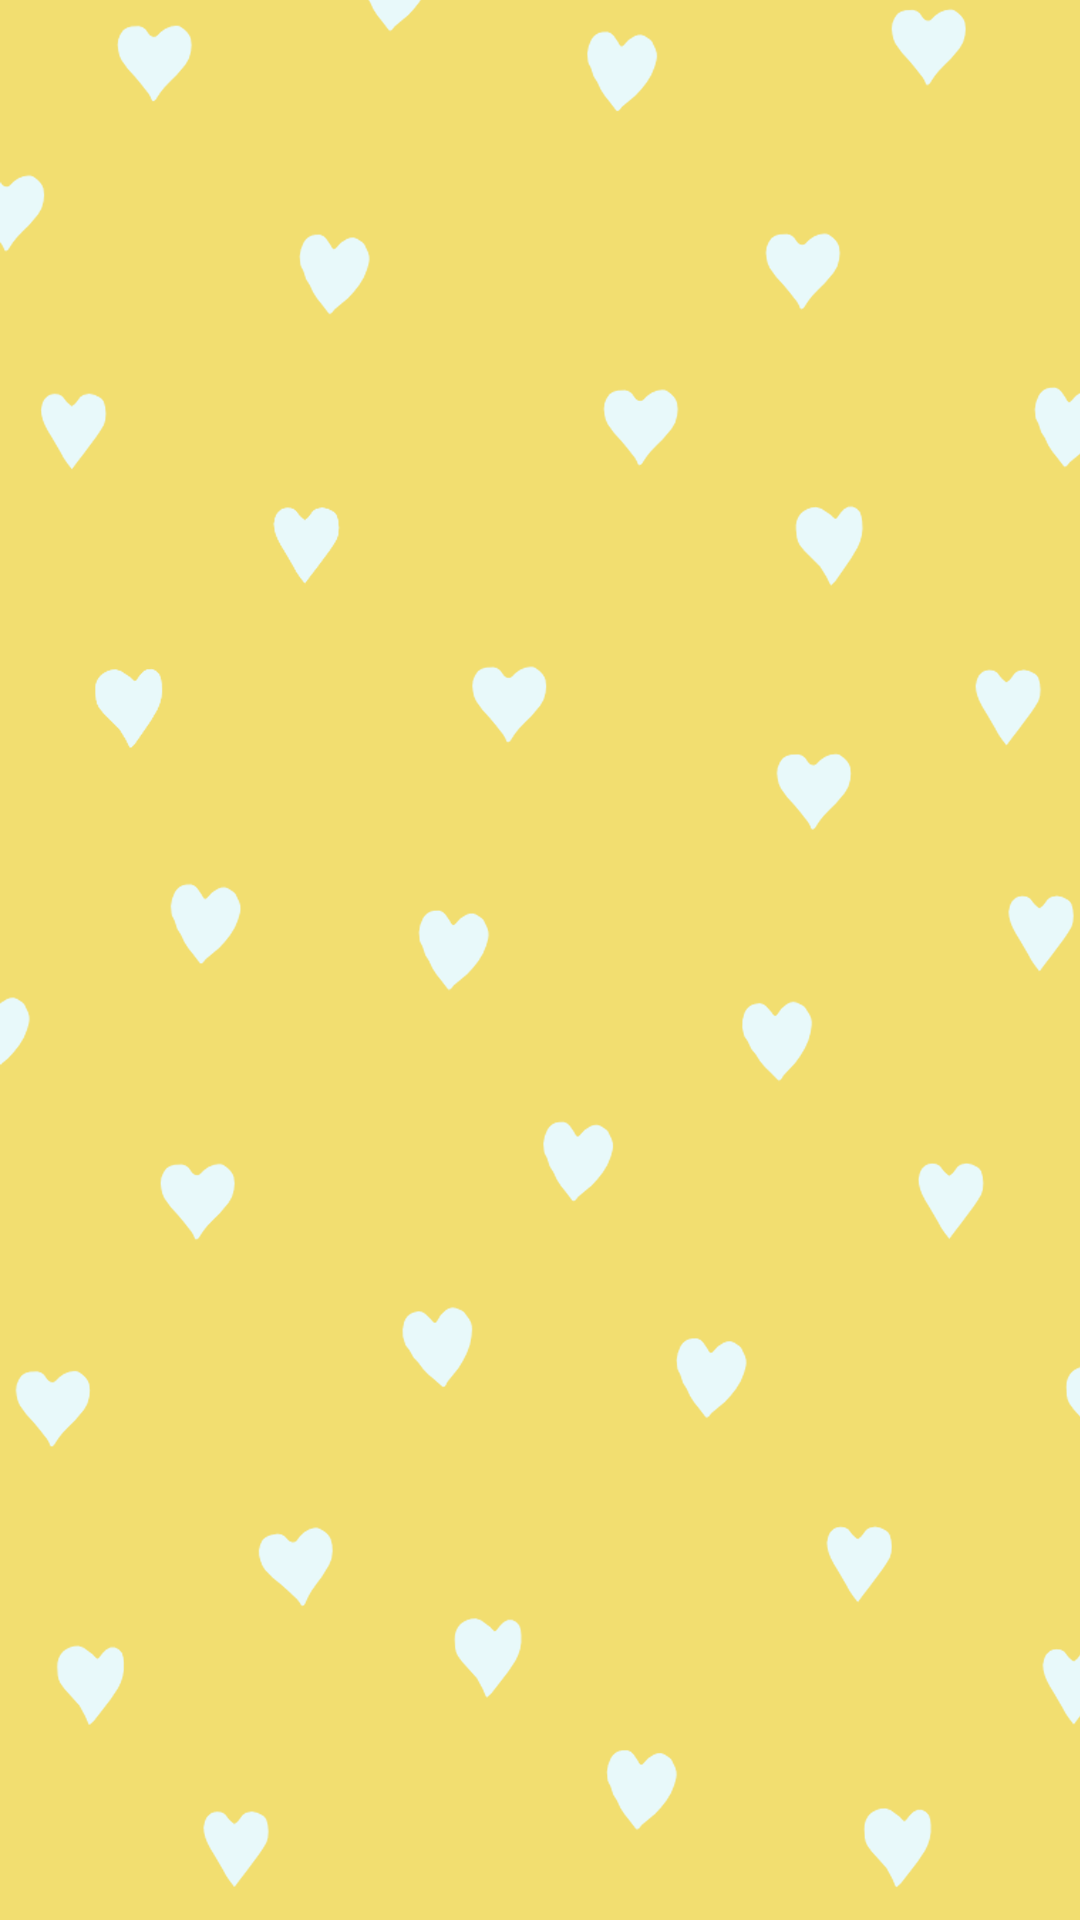 Hình nền trái tim vàng là sự lựa chọn hoàn hảo cho những ai yêu màu sắc. Sắc vàng tươi tắn giúp cho căn phòng của bạn trở nên sáng sủa và ấm áp hơn. Với hình nền này, bạn sẽ cảm thấy hạnh phúc và đầy năng lượng. Hãy để trái tim vàng đưa bạn đến những giây phút tuyệt vời trong cuộc sống này.